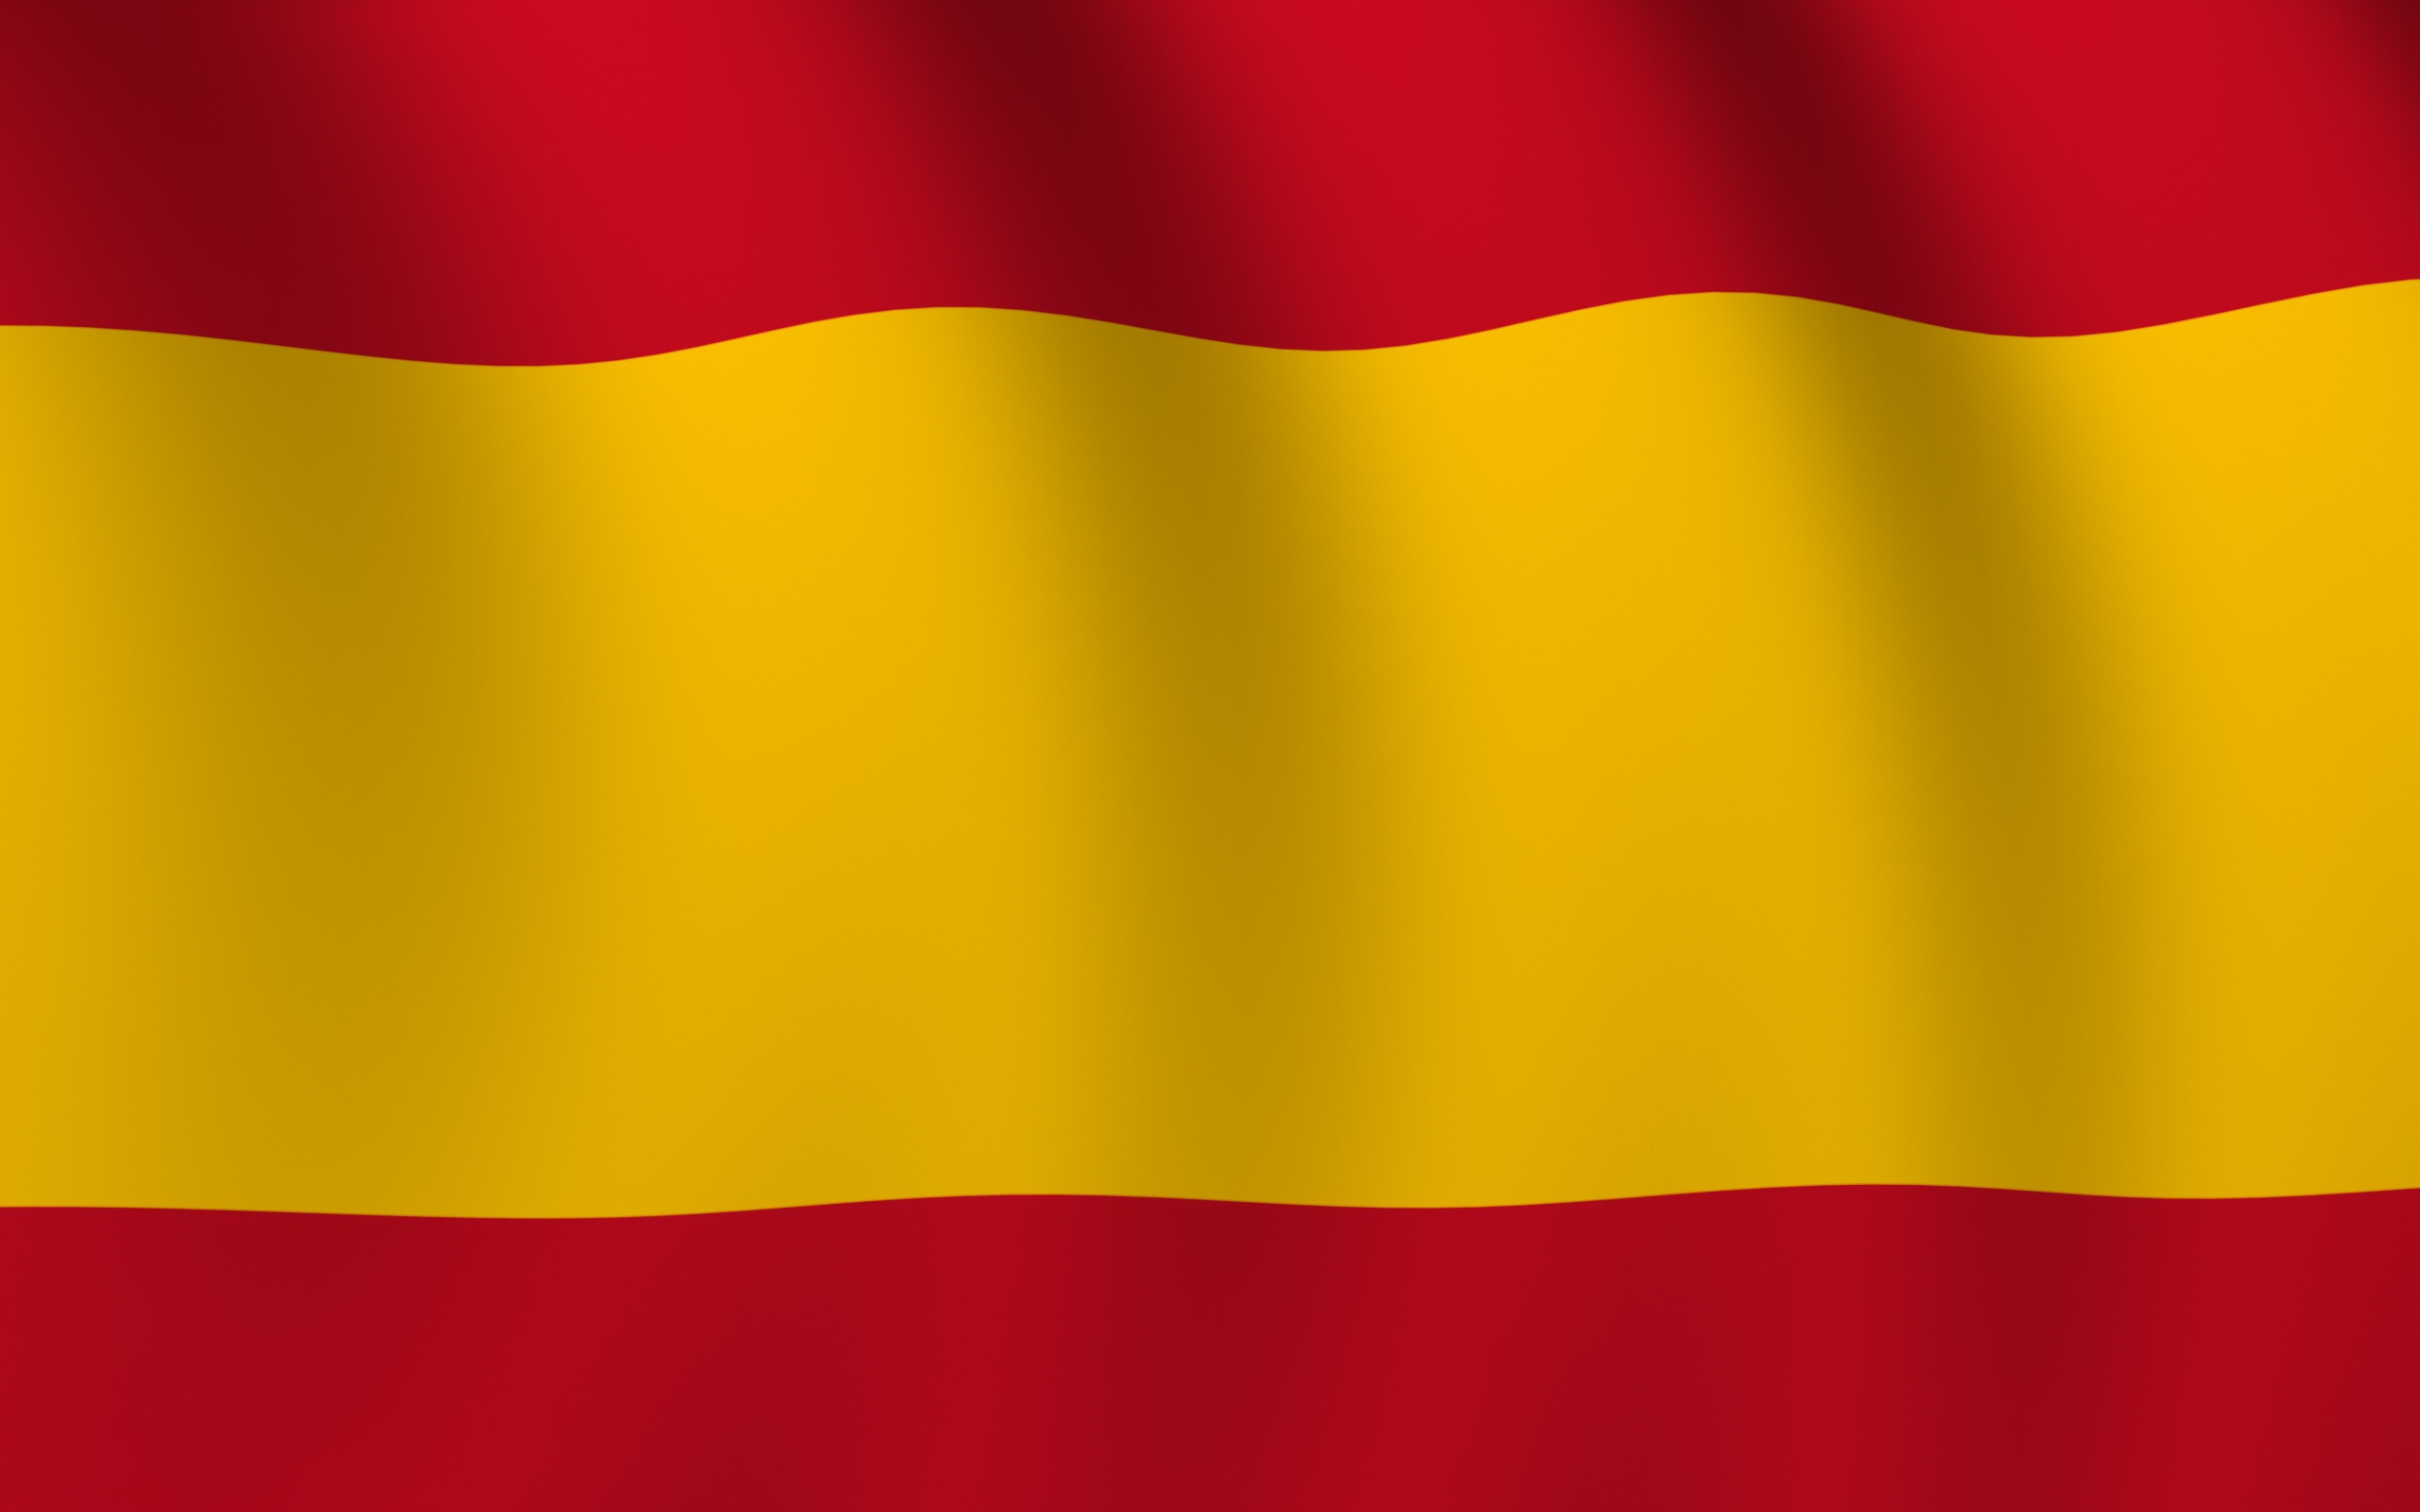 Скачать обои бесплатно Флаги, Разное, Флаг, Флаг Испании картинка на рабочий стол ПК